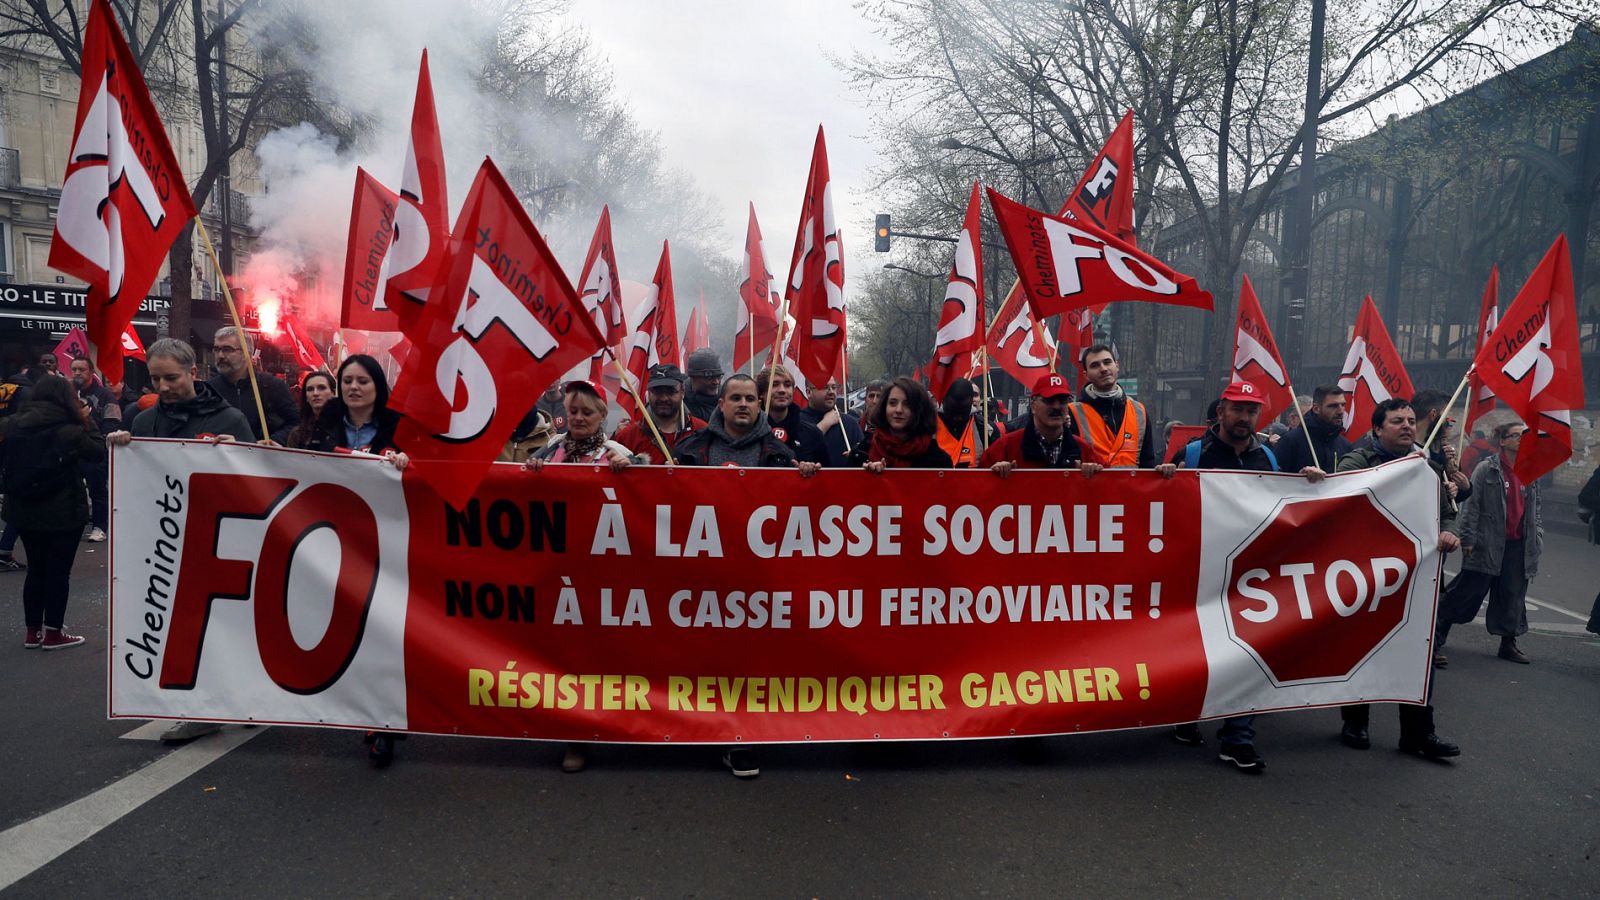 La primera de las 36 jornadas de huelga de ferrocarriles en Francia afecta a 4,5 millones de personas